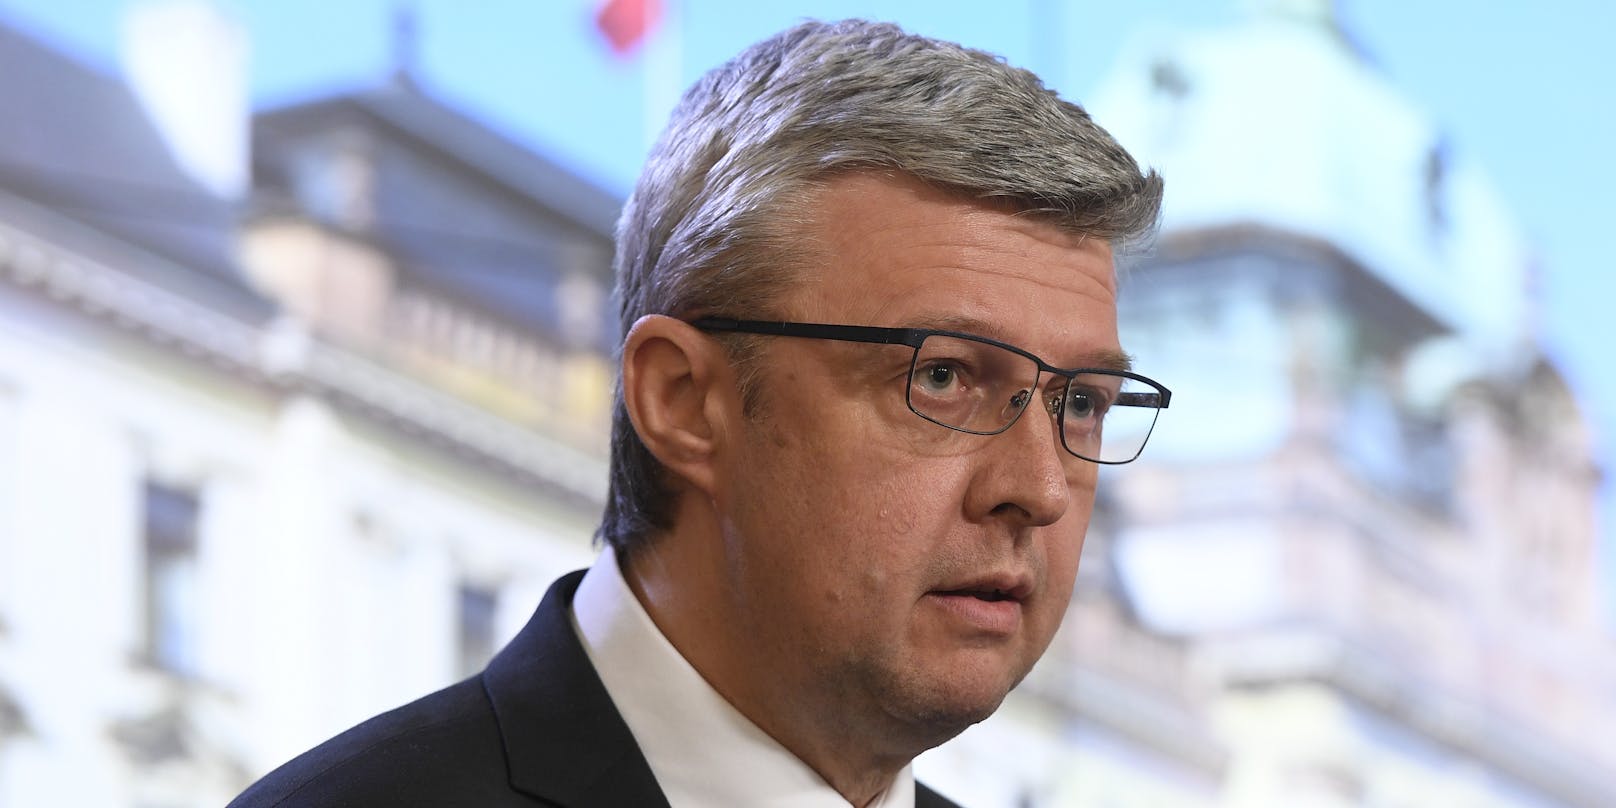 Der tschechische Verkehrsminister Karel Havlicek geht von menschlichem Versagen aus.